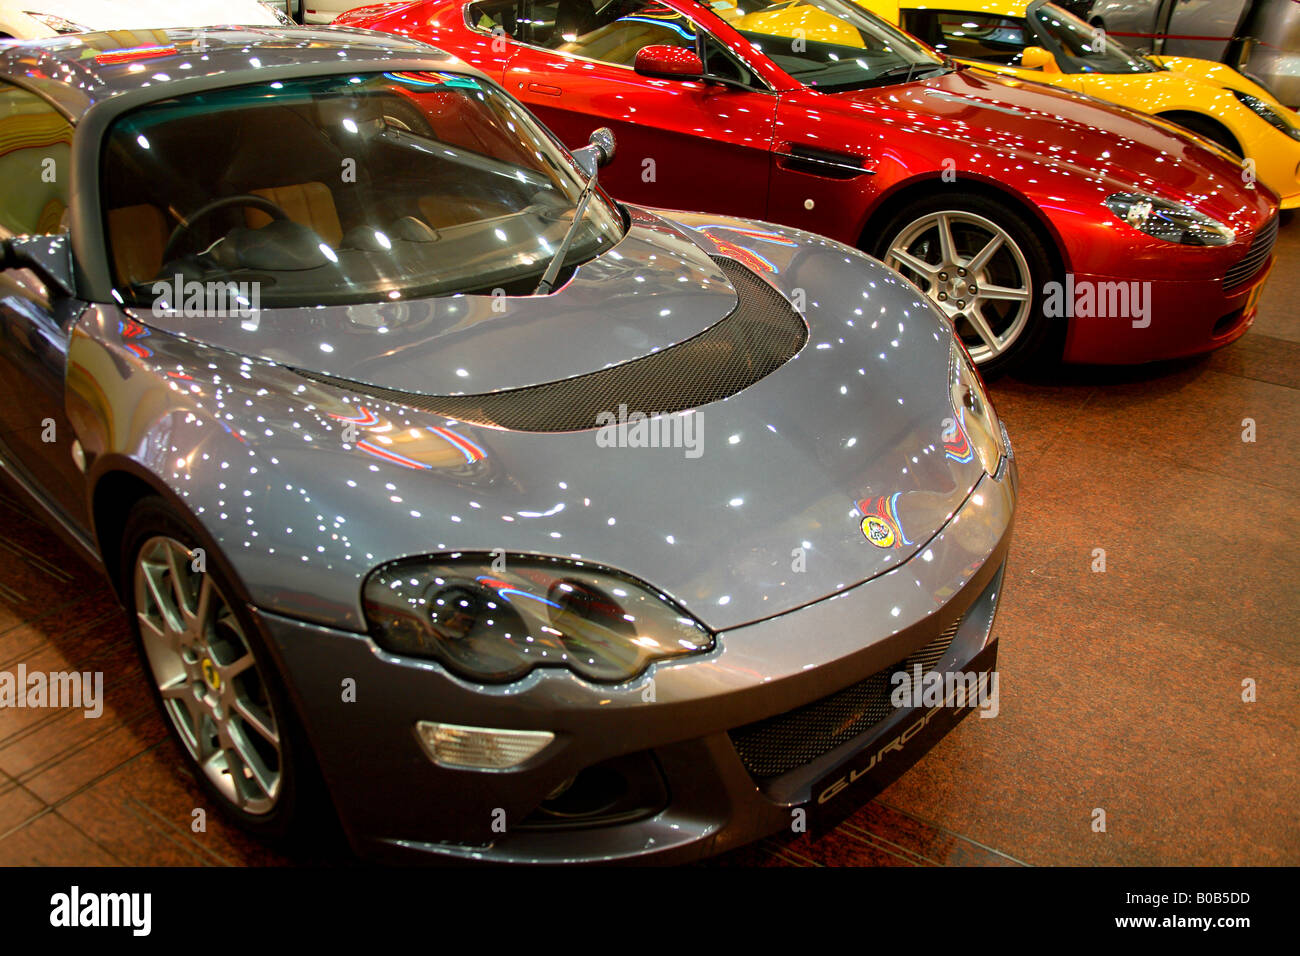 Three sports cars Stock Photo